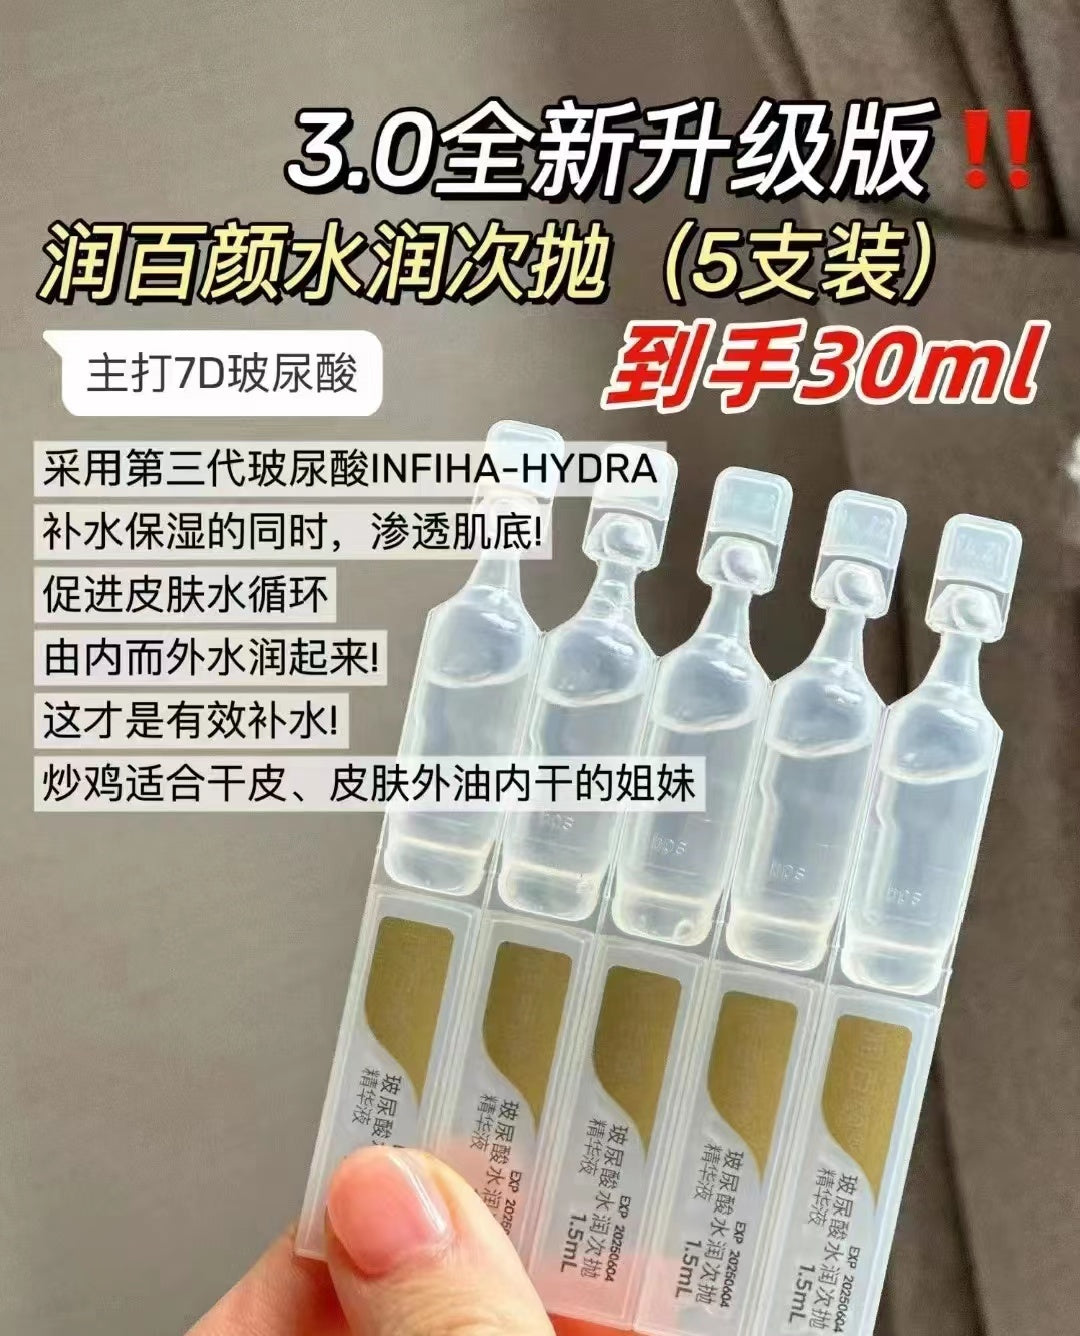 Biohyalux Ha AQUA Single Use Essence Serum 华熙生物润百颜第三代蜂巢水润次抛原液 1.5ml*5/1.5ml*30